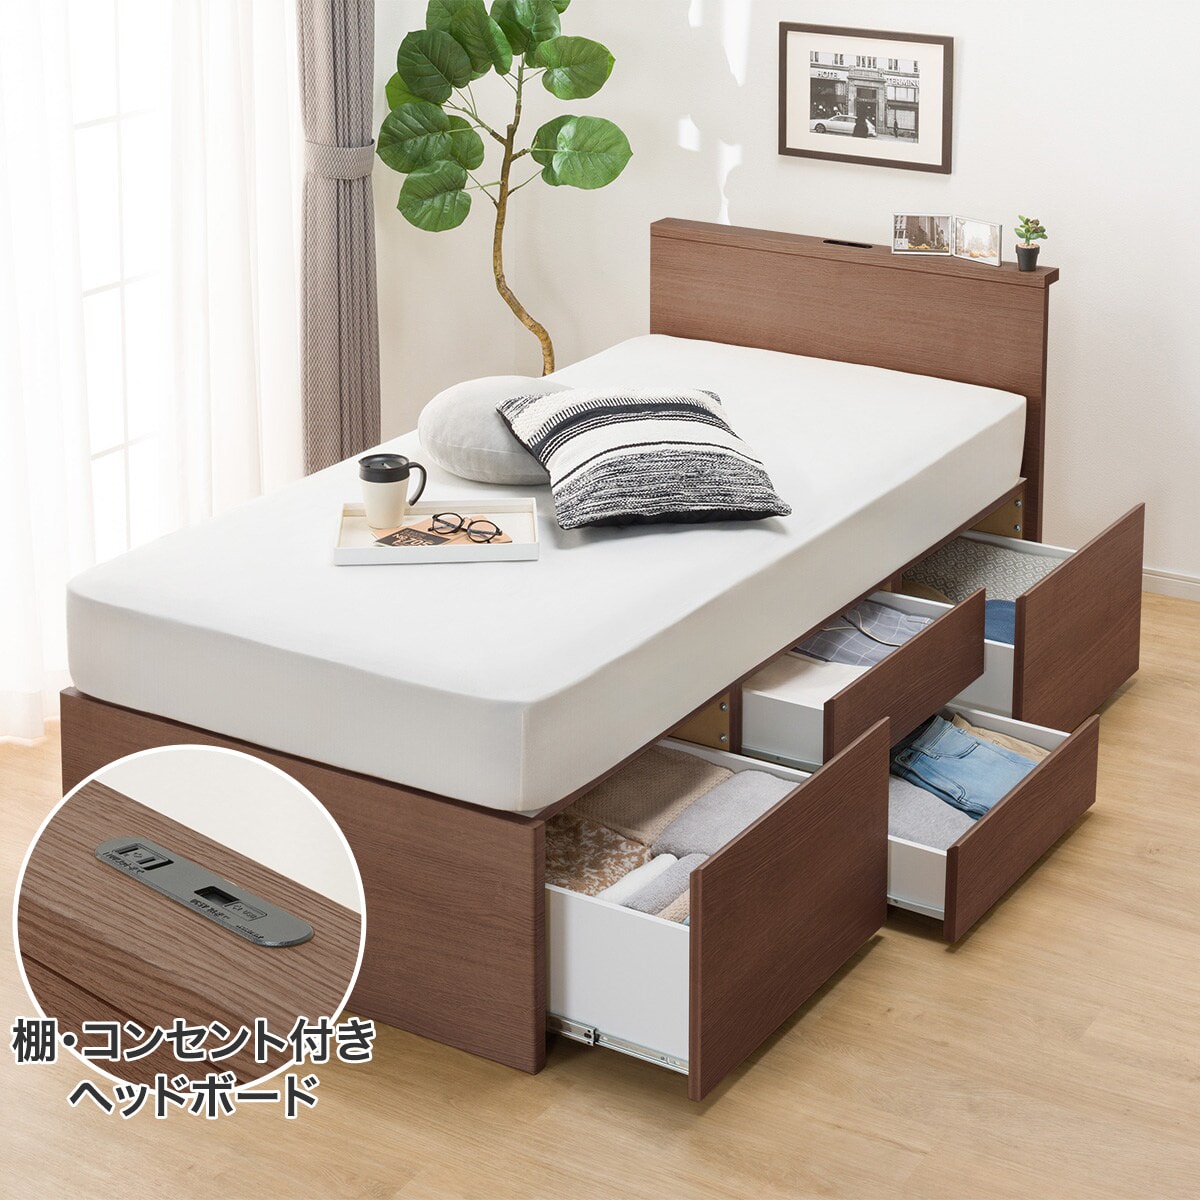 日本最大の ニトリ E546 寝具 コンセント 収納付き シングルサイズ 